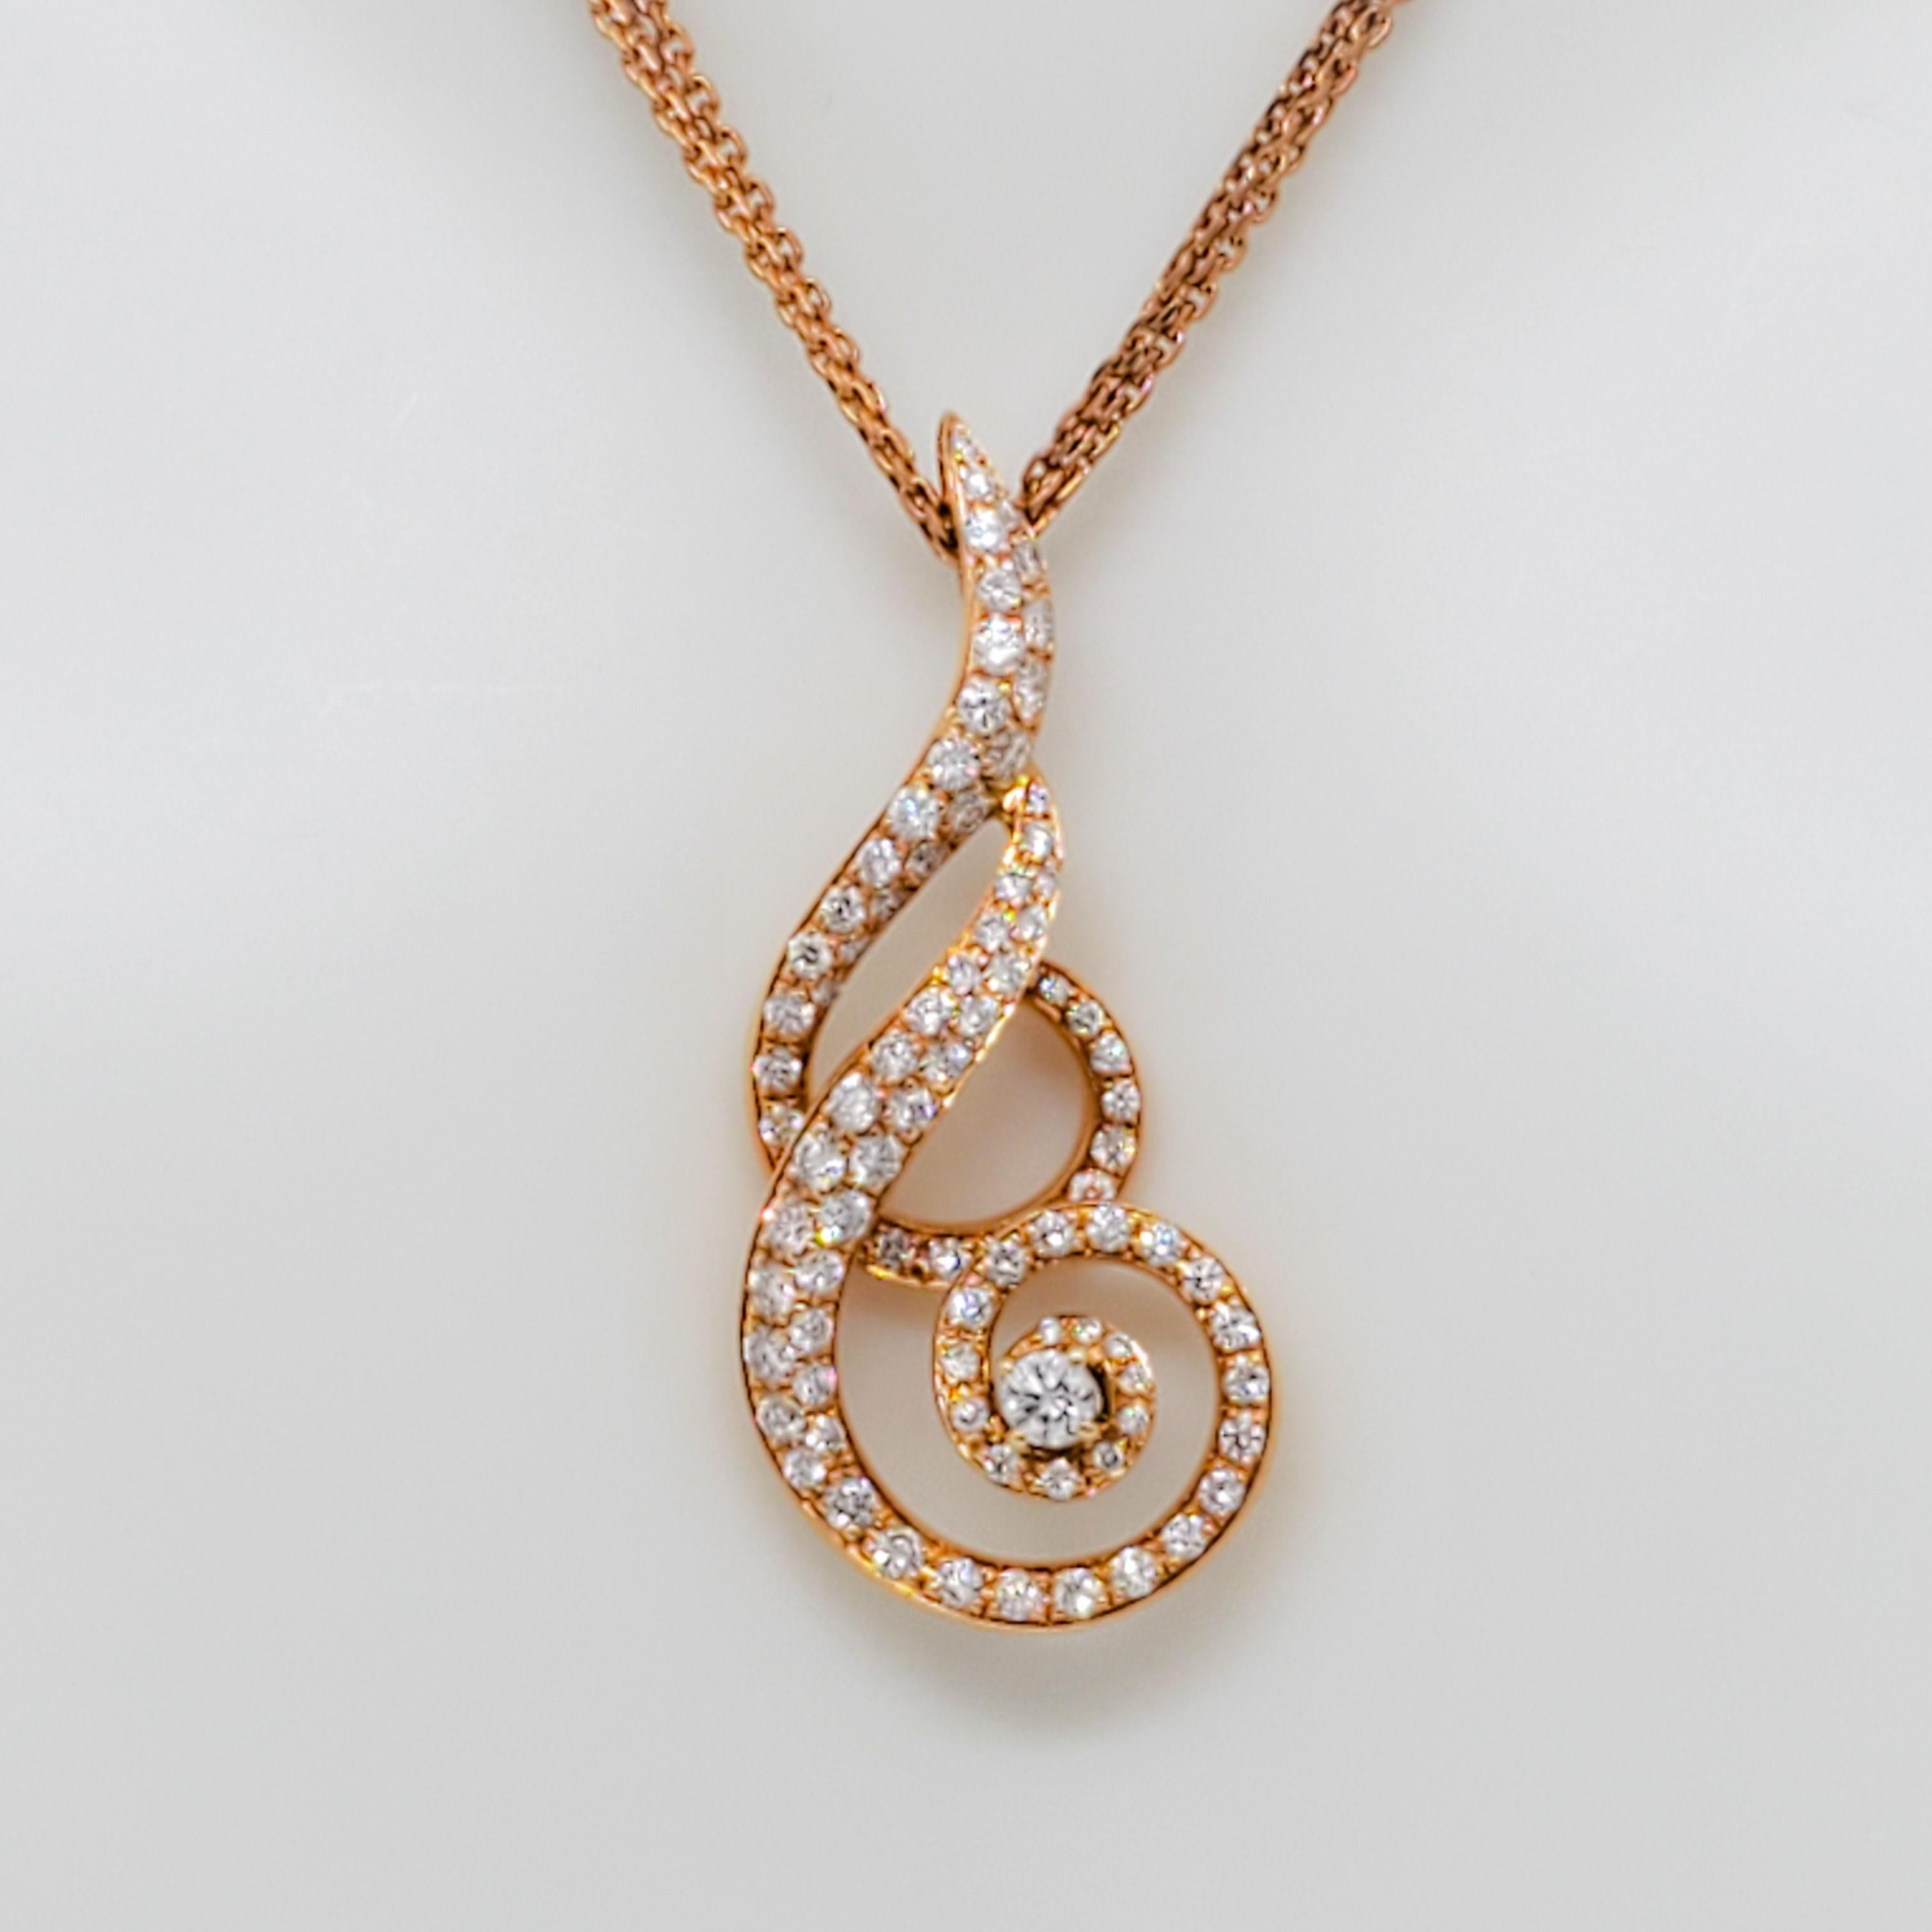 Schöne Anhänger-Halskette mit 0.81 ct. weißen runden Diamanten von guter Qualität.  Handgefertigt aus 18k Roségold, 16